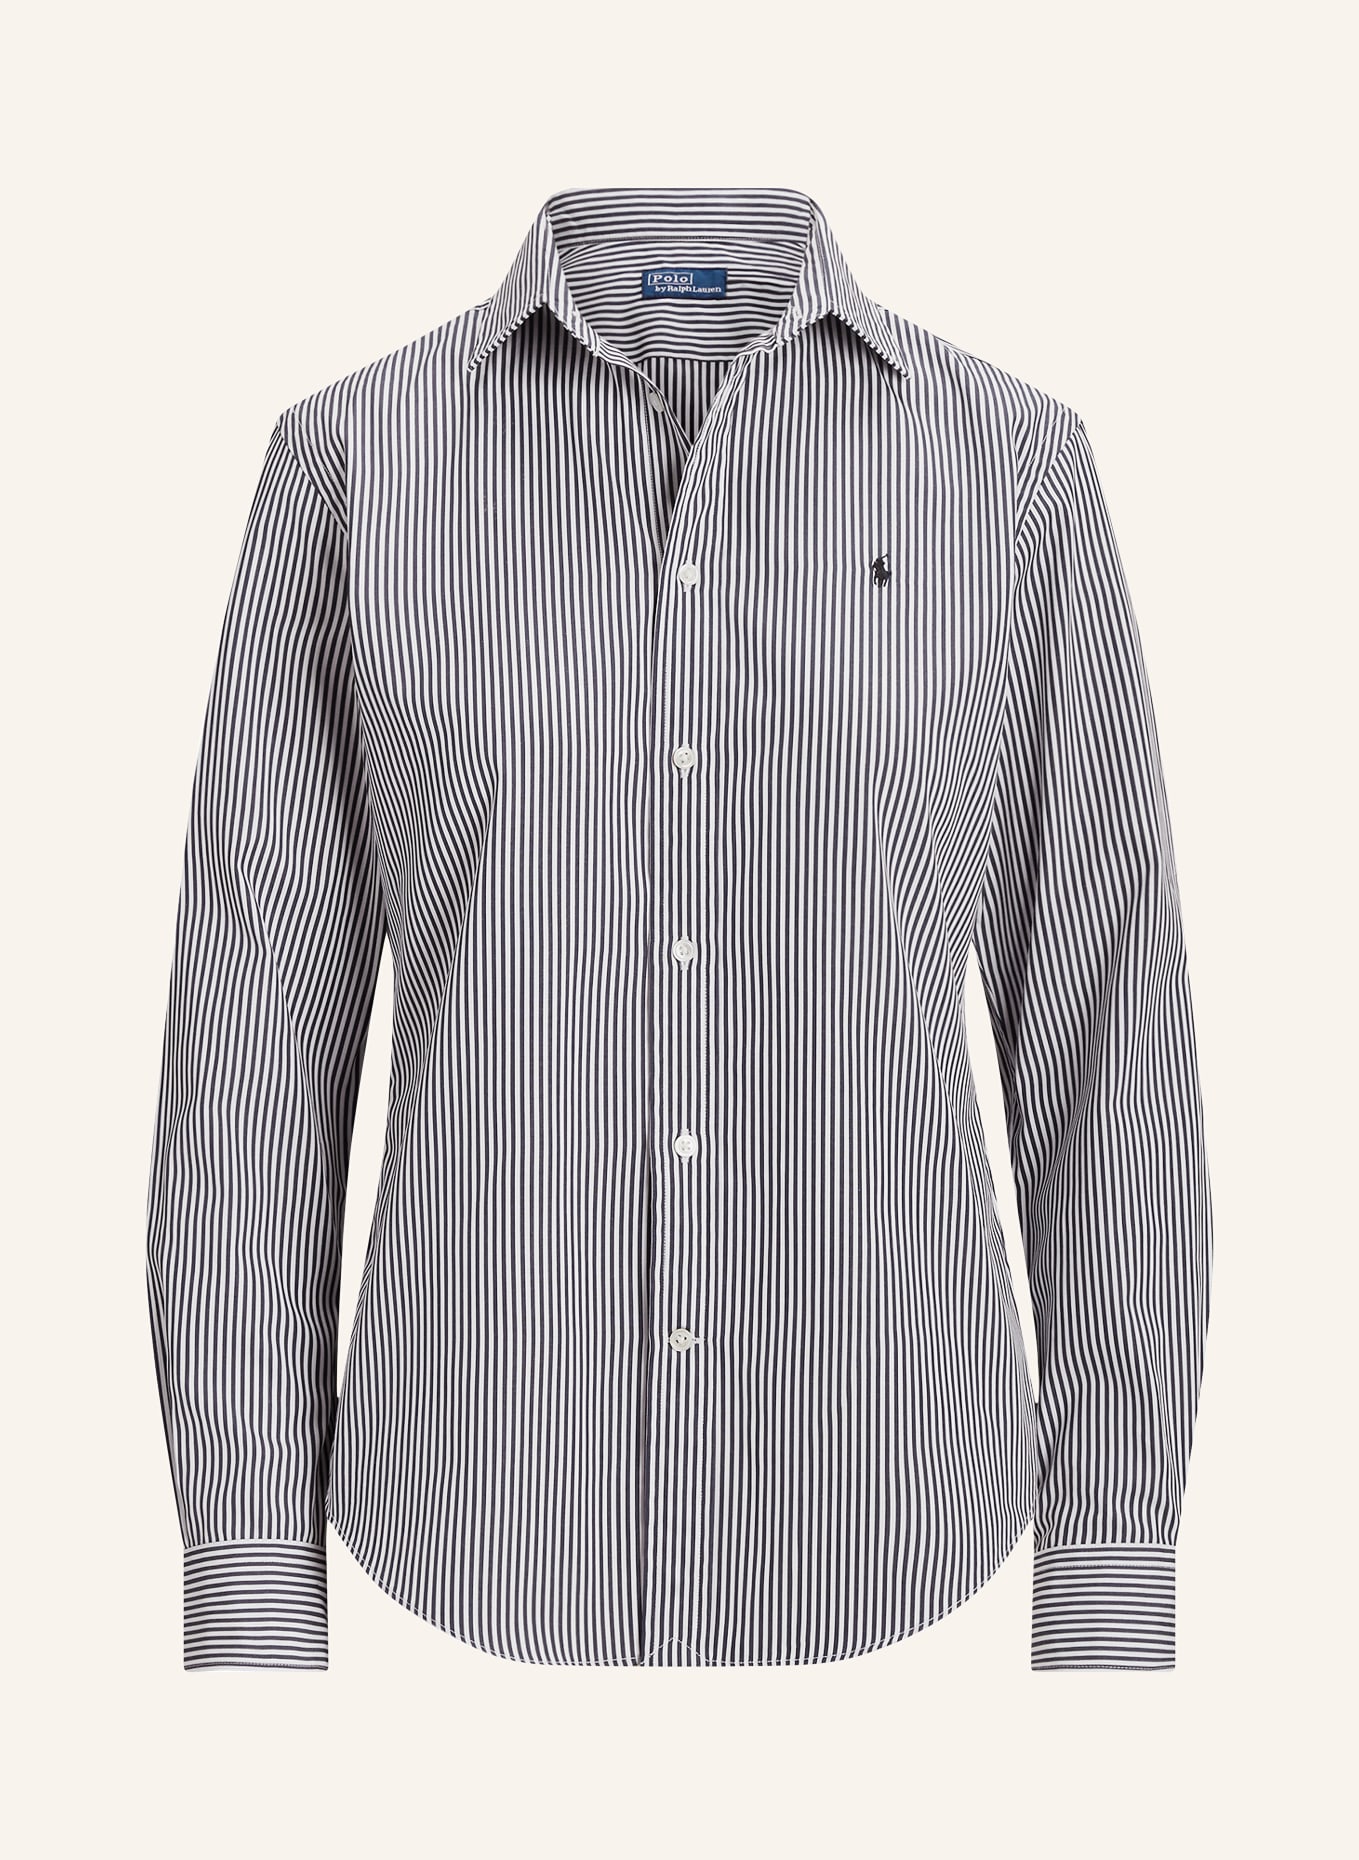 POLO RALPH LAUREN Shirt blouse, Color: BLACK/ WHITE (Image 1)